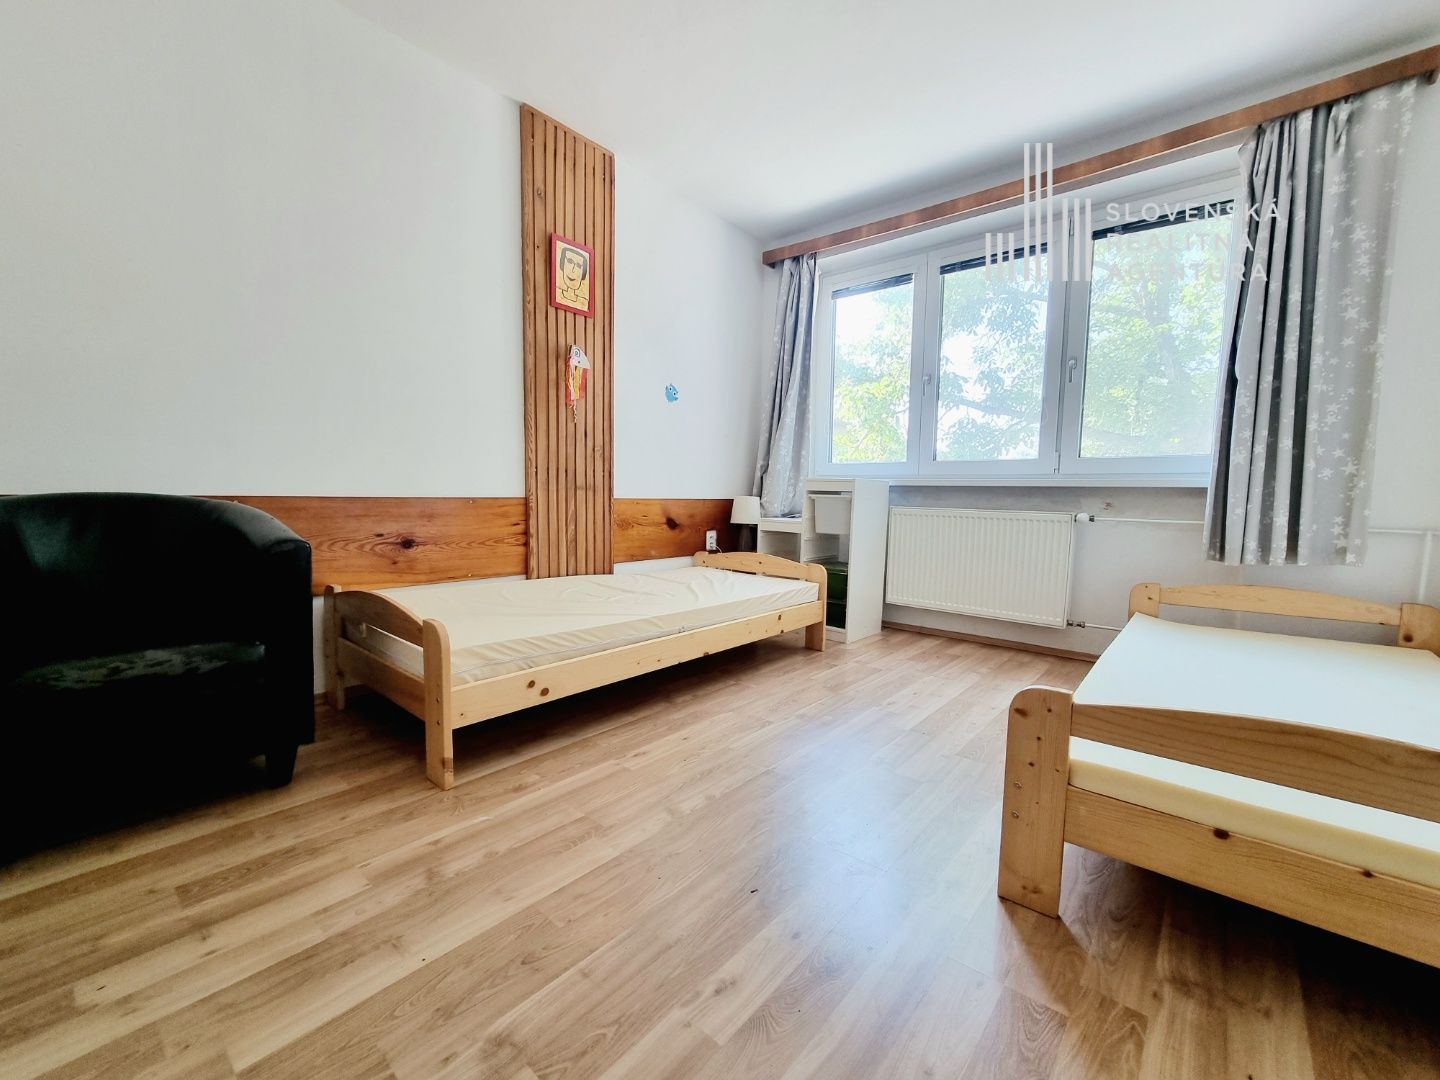 SRA | 3 izb. byt s atmosférou bývania ako v rodinnom dome, obec Malinovo